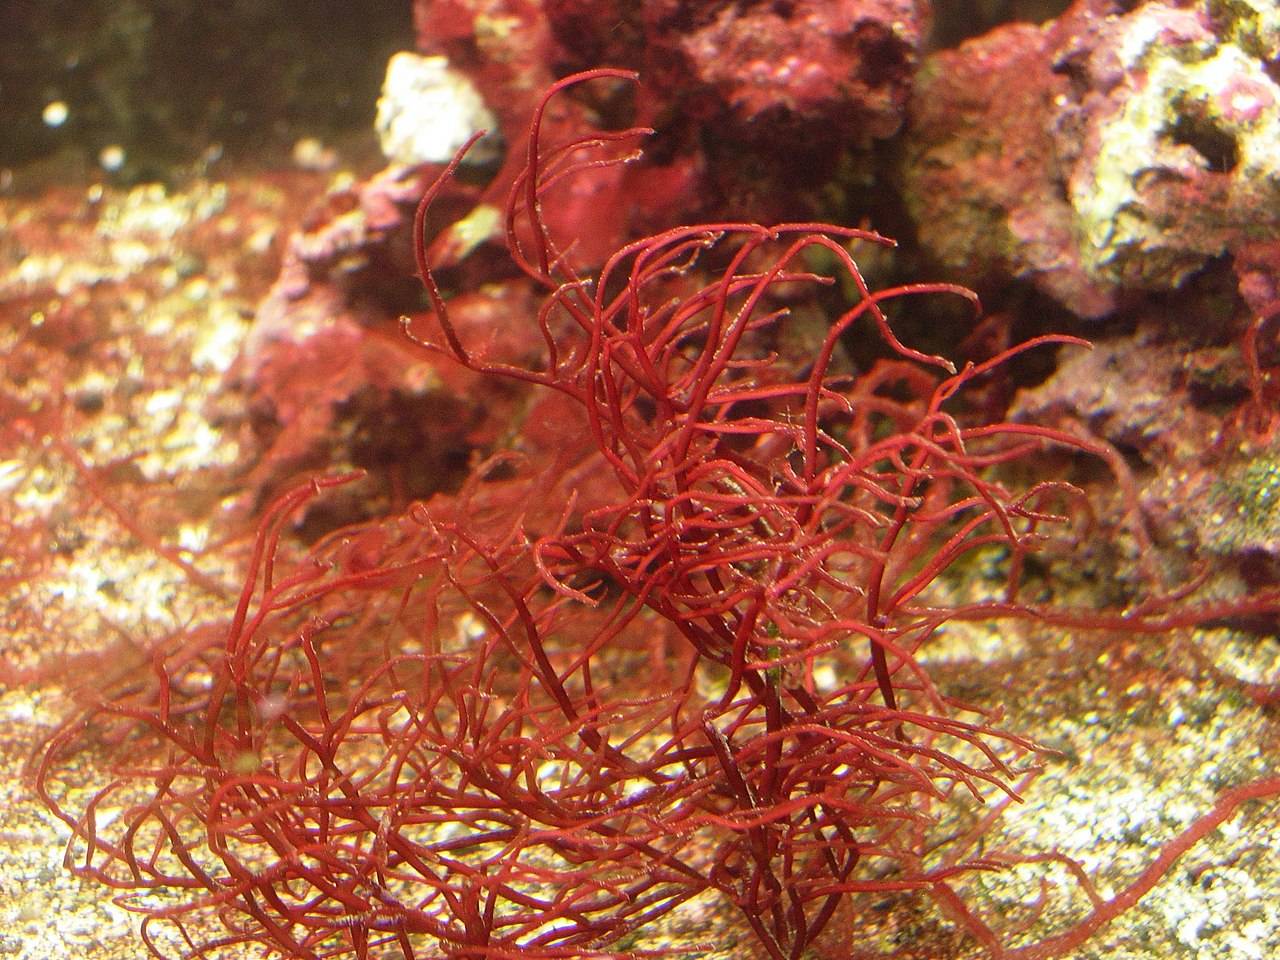 Un pequeno crustaceo marino poliniza las algas